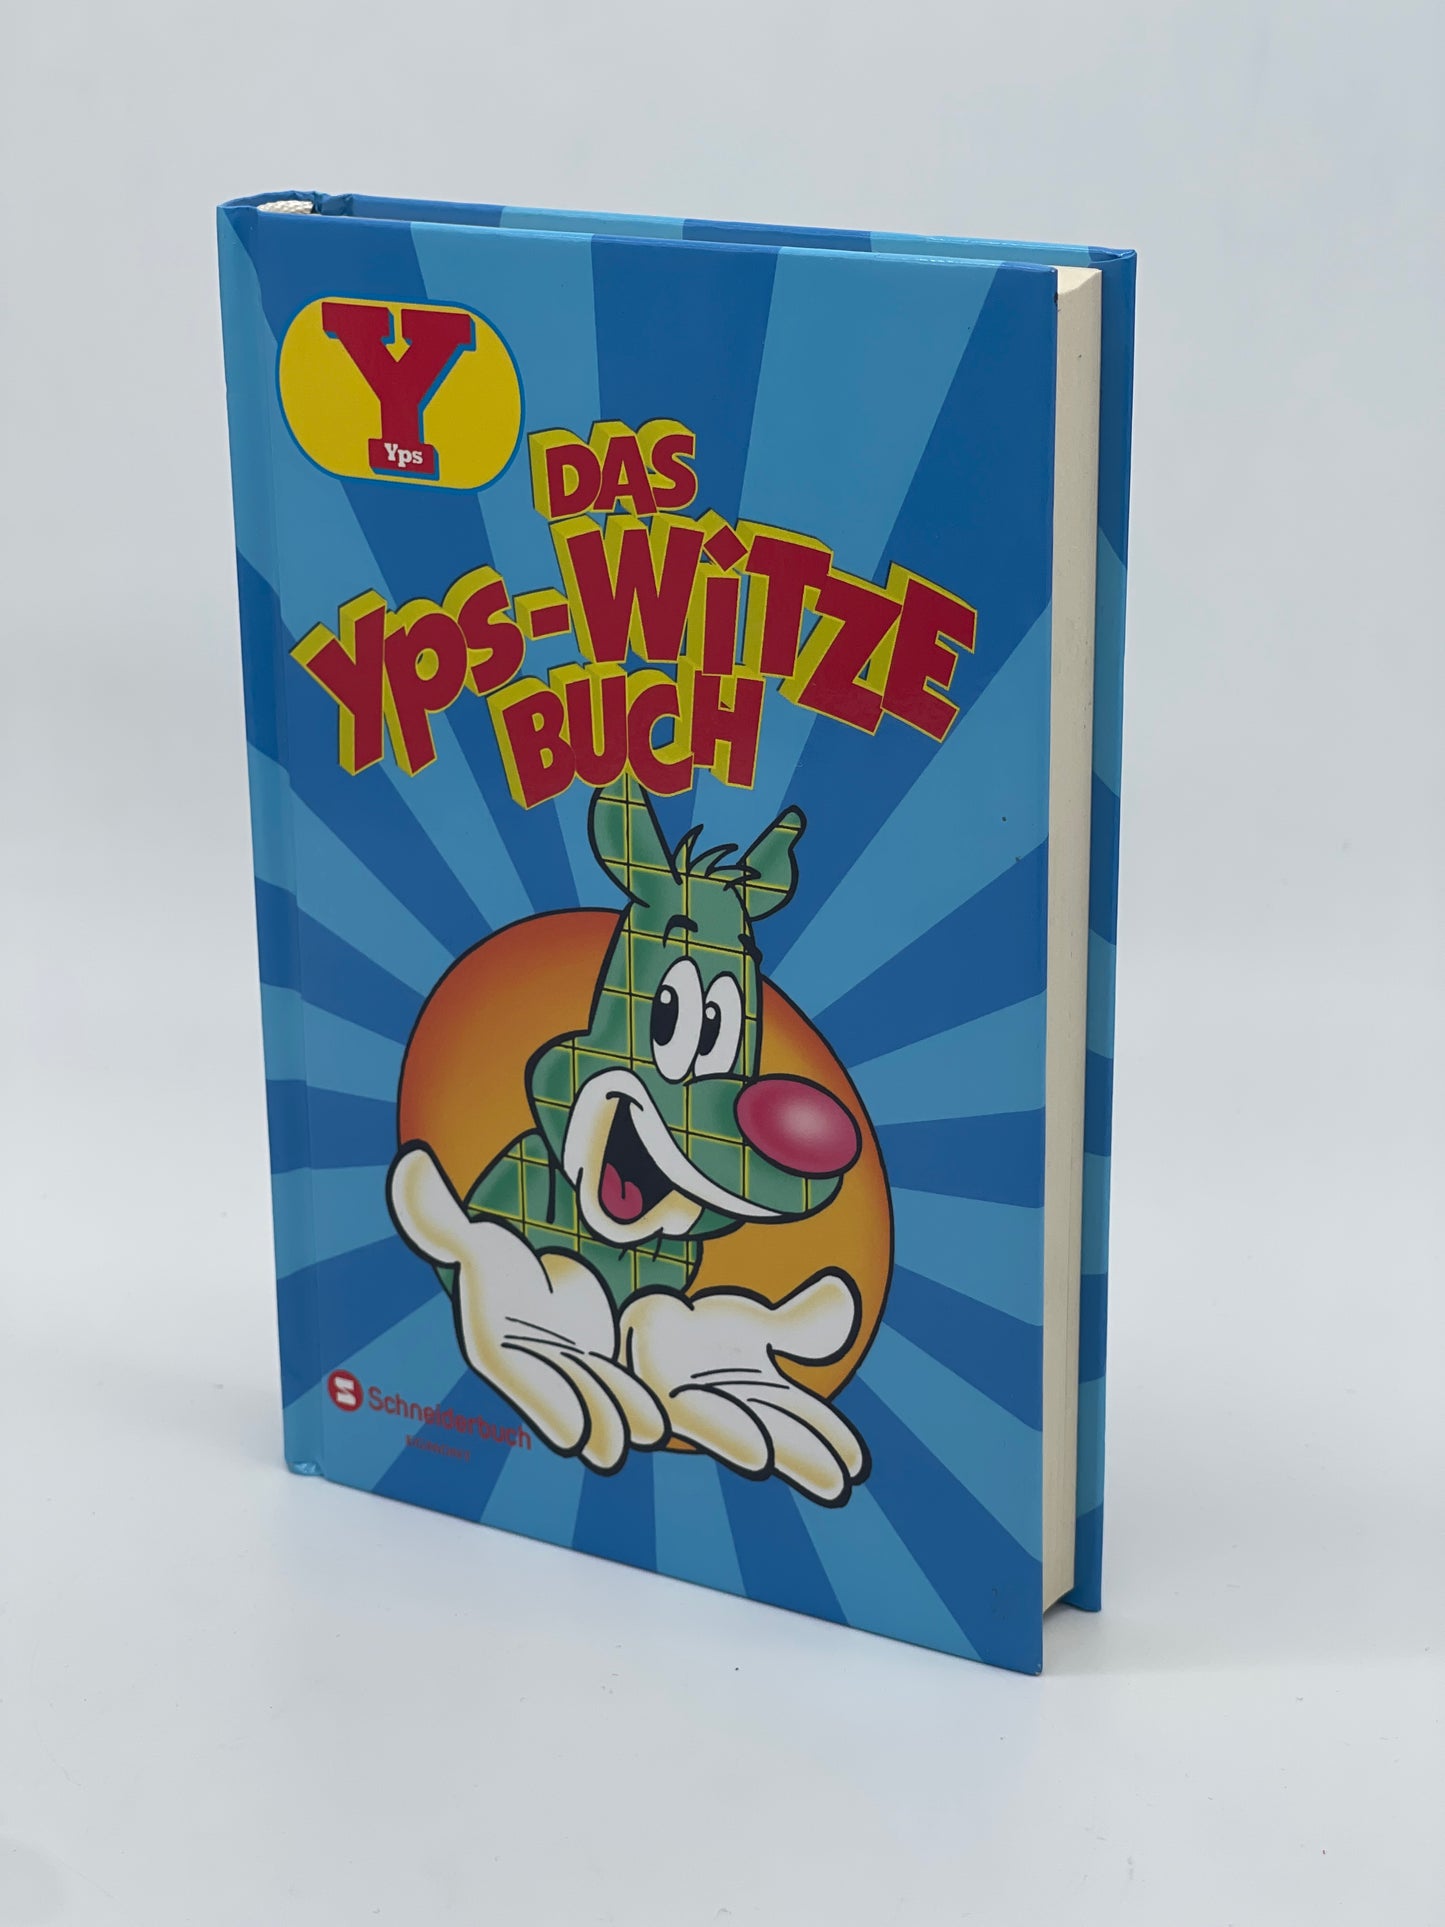 YPS "Das Yps-Witze Buch" Riesenladung Witze Schneiderbuch Egmont Verlag (2014)